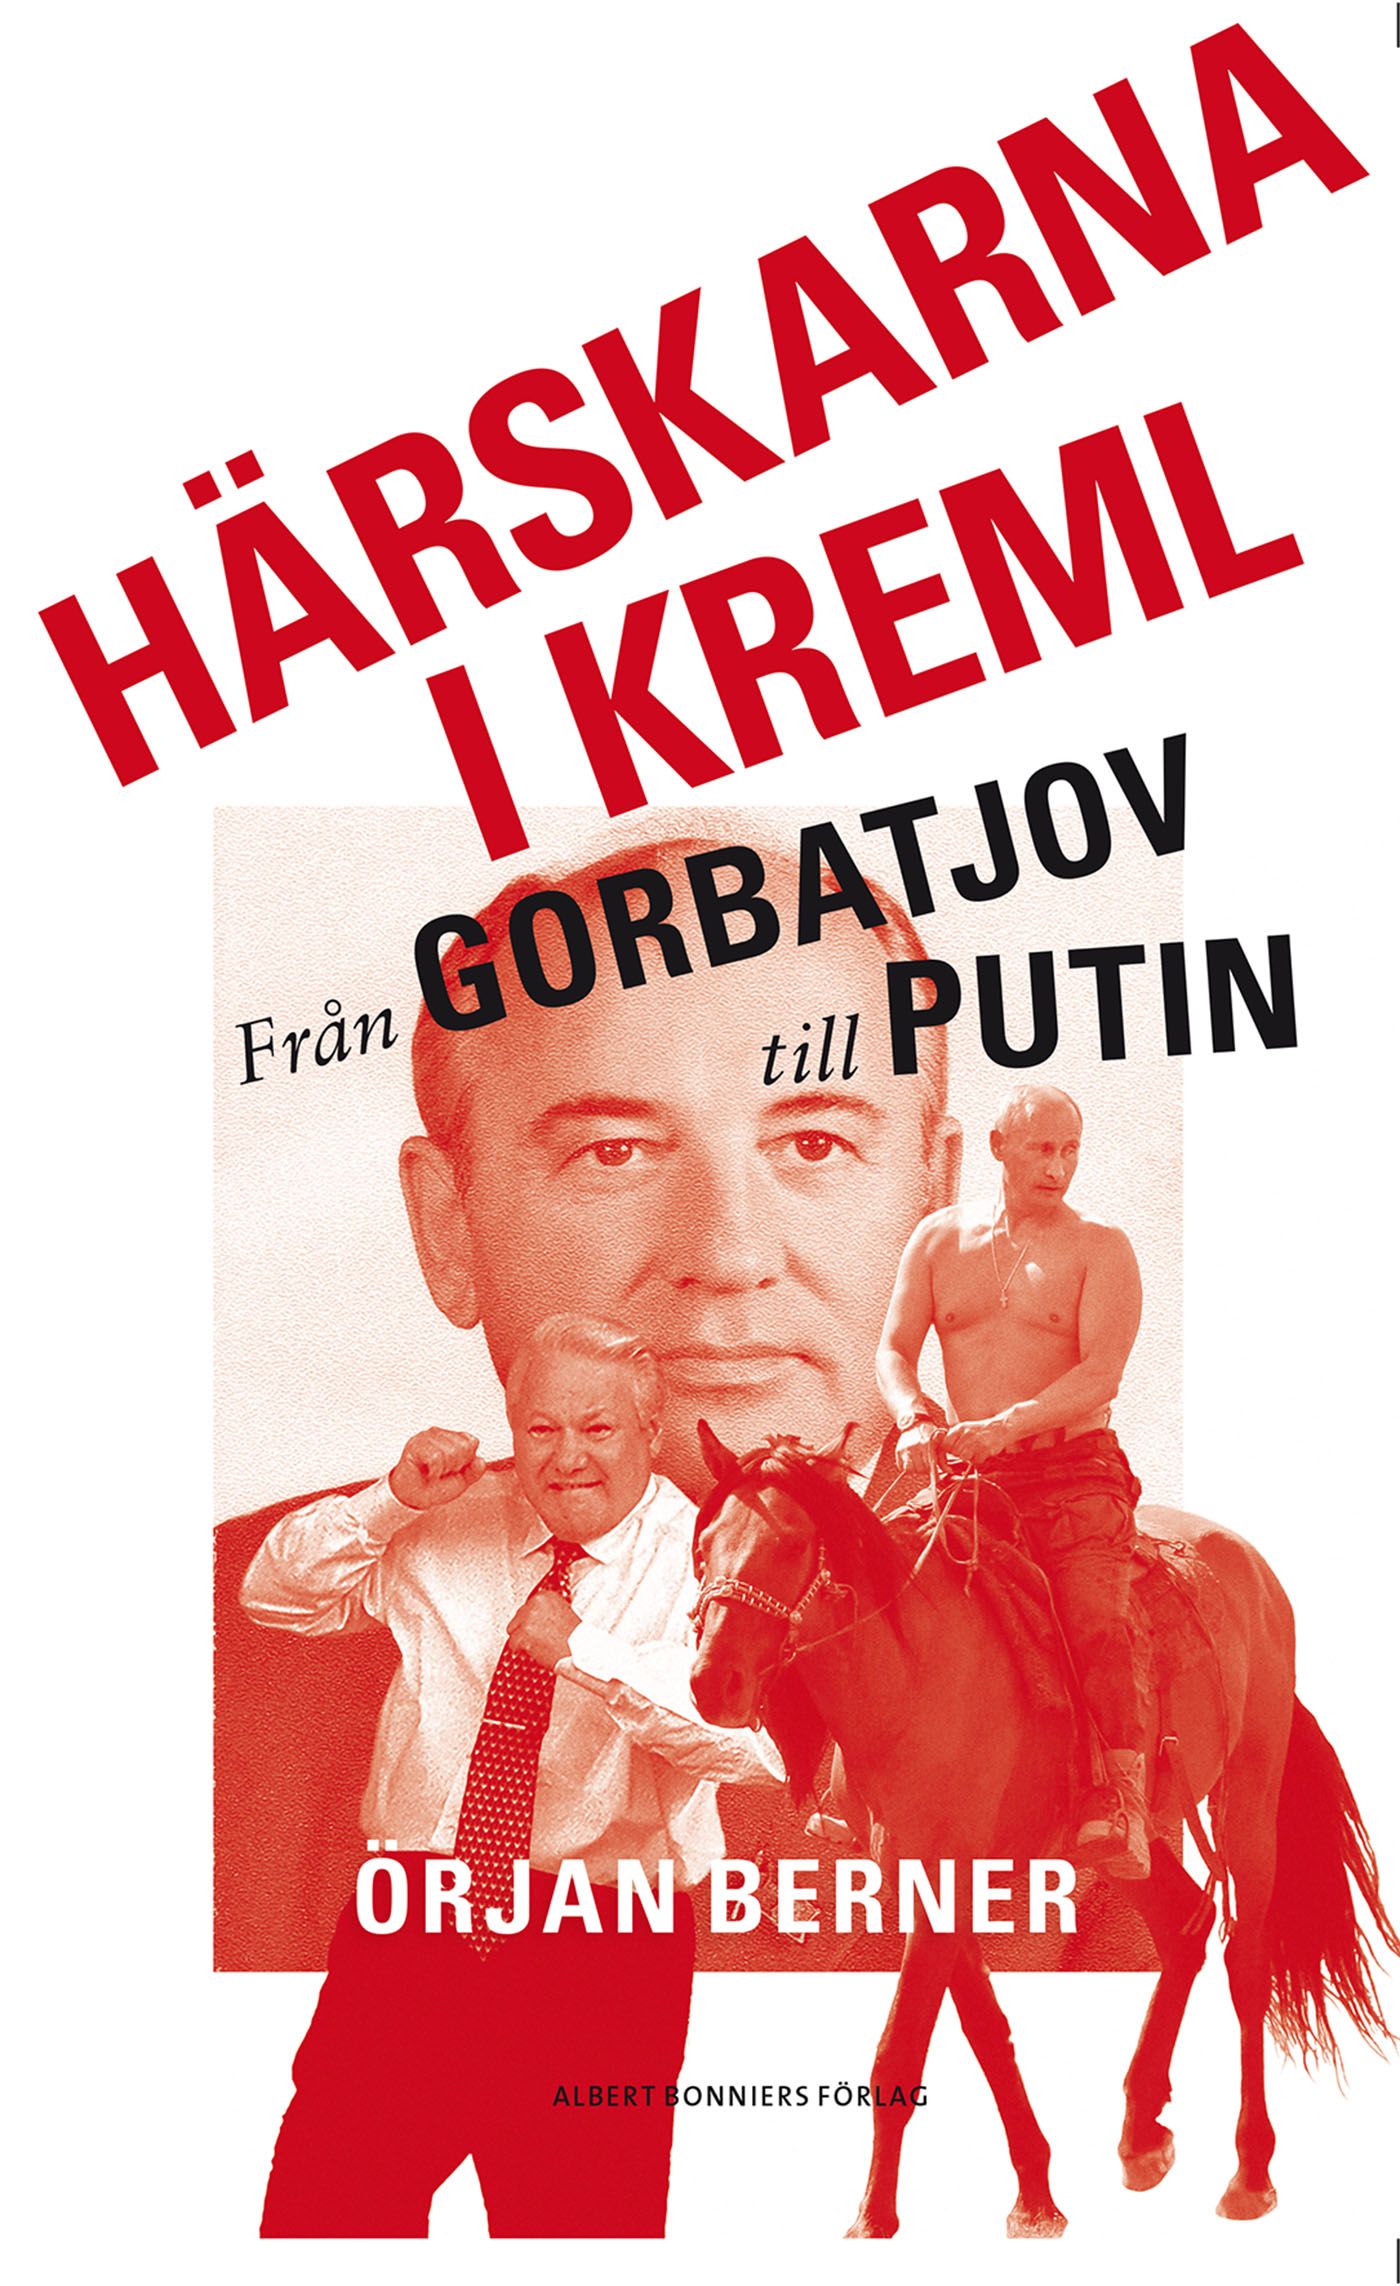 Härskarna i Kreml - från Gorbatjov till Putin, eBook by Örjan Berner